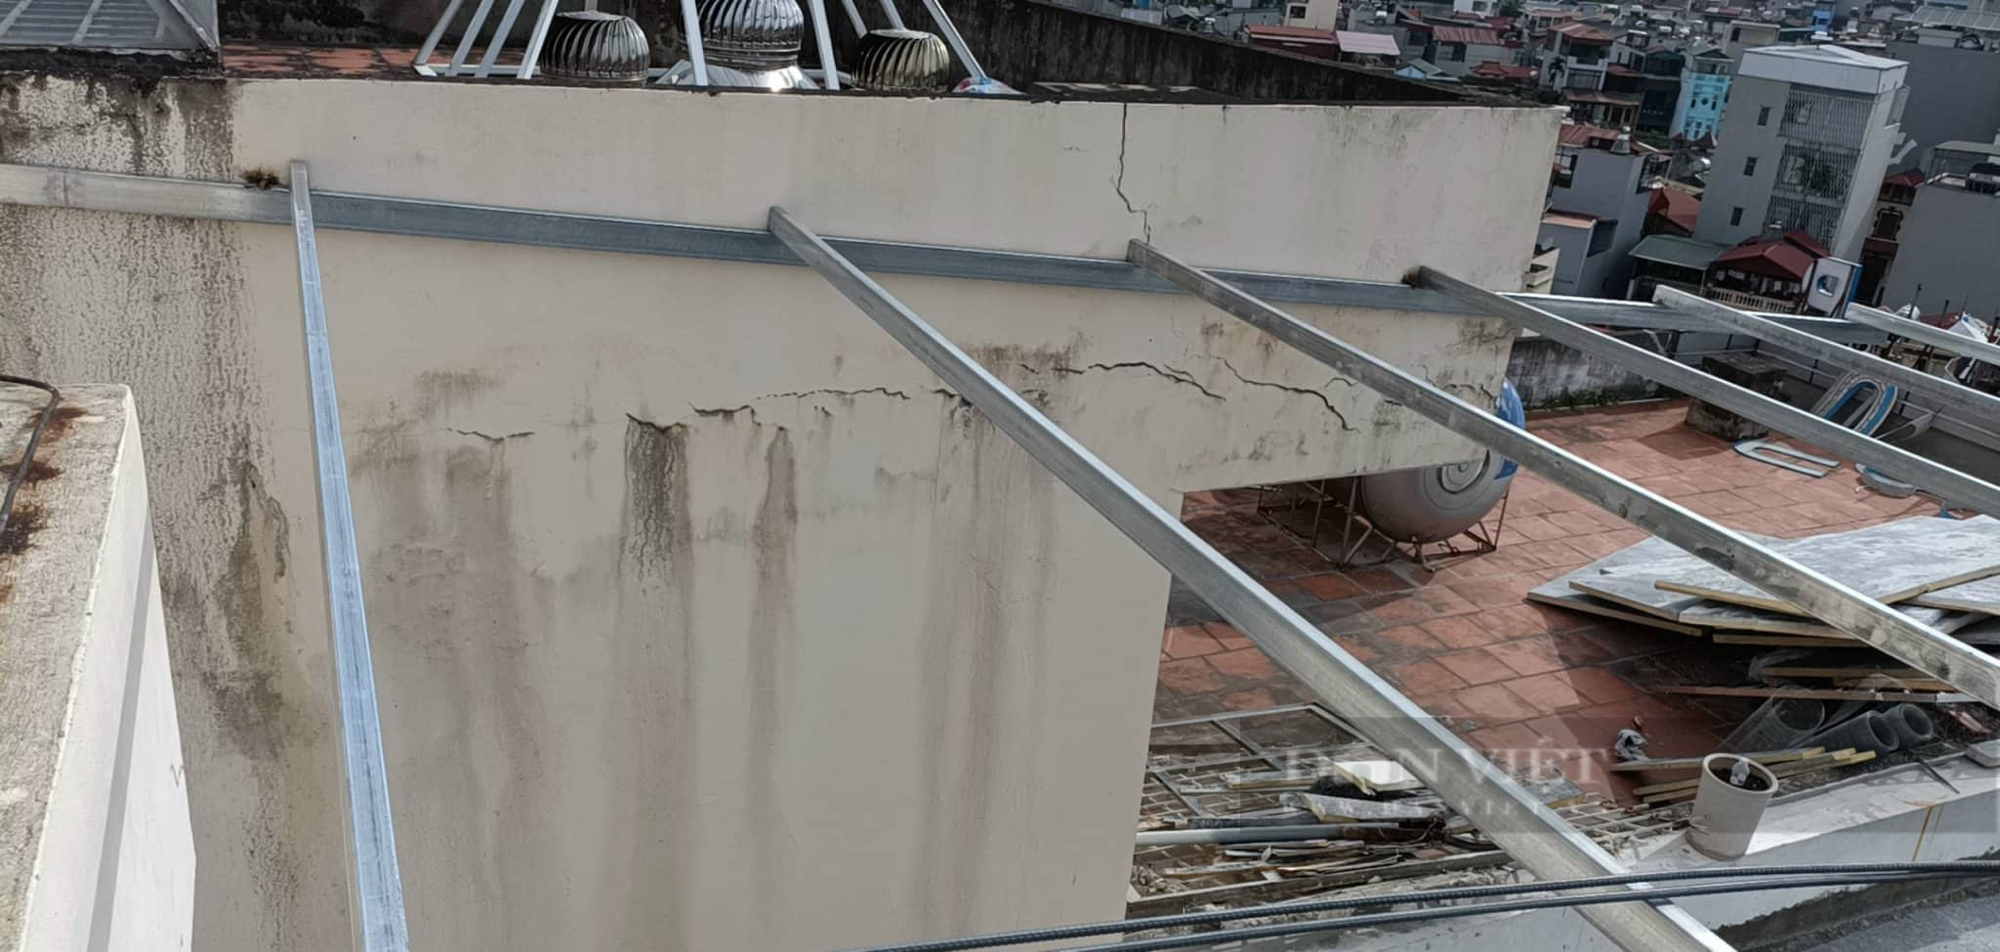 Hà Nội: Công trình xây dựng sửa chữa, cải tạo trên phố Vọng gây nứt nhà hàng xóm - Ảnh 2.